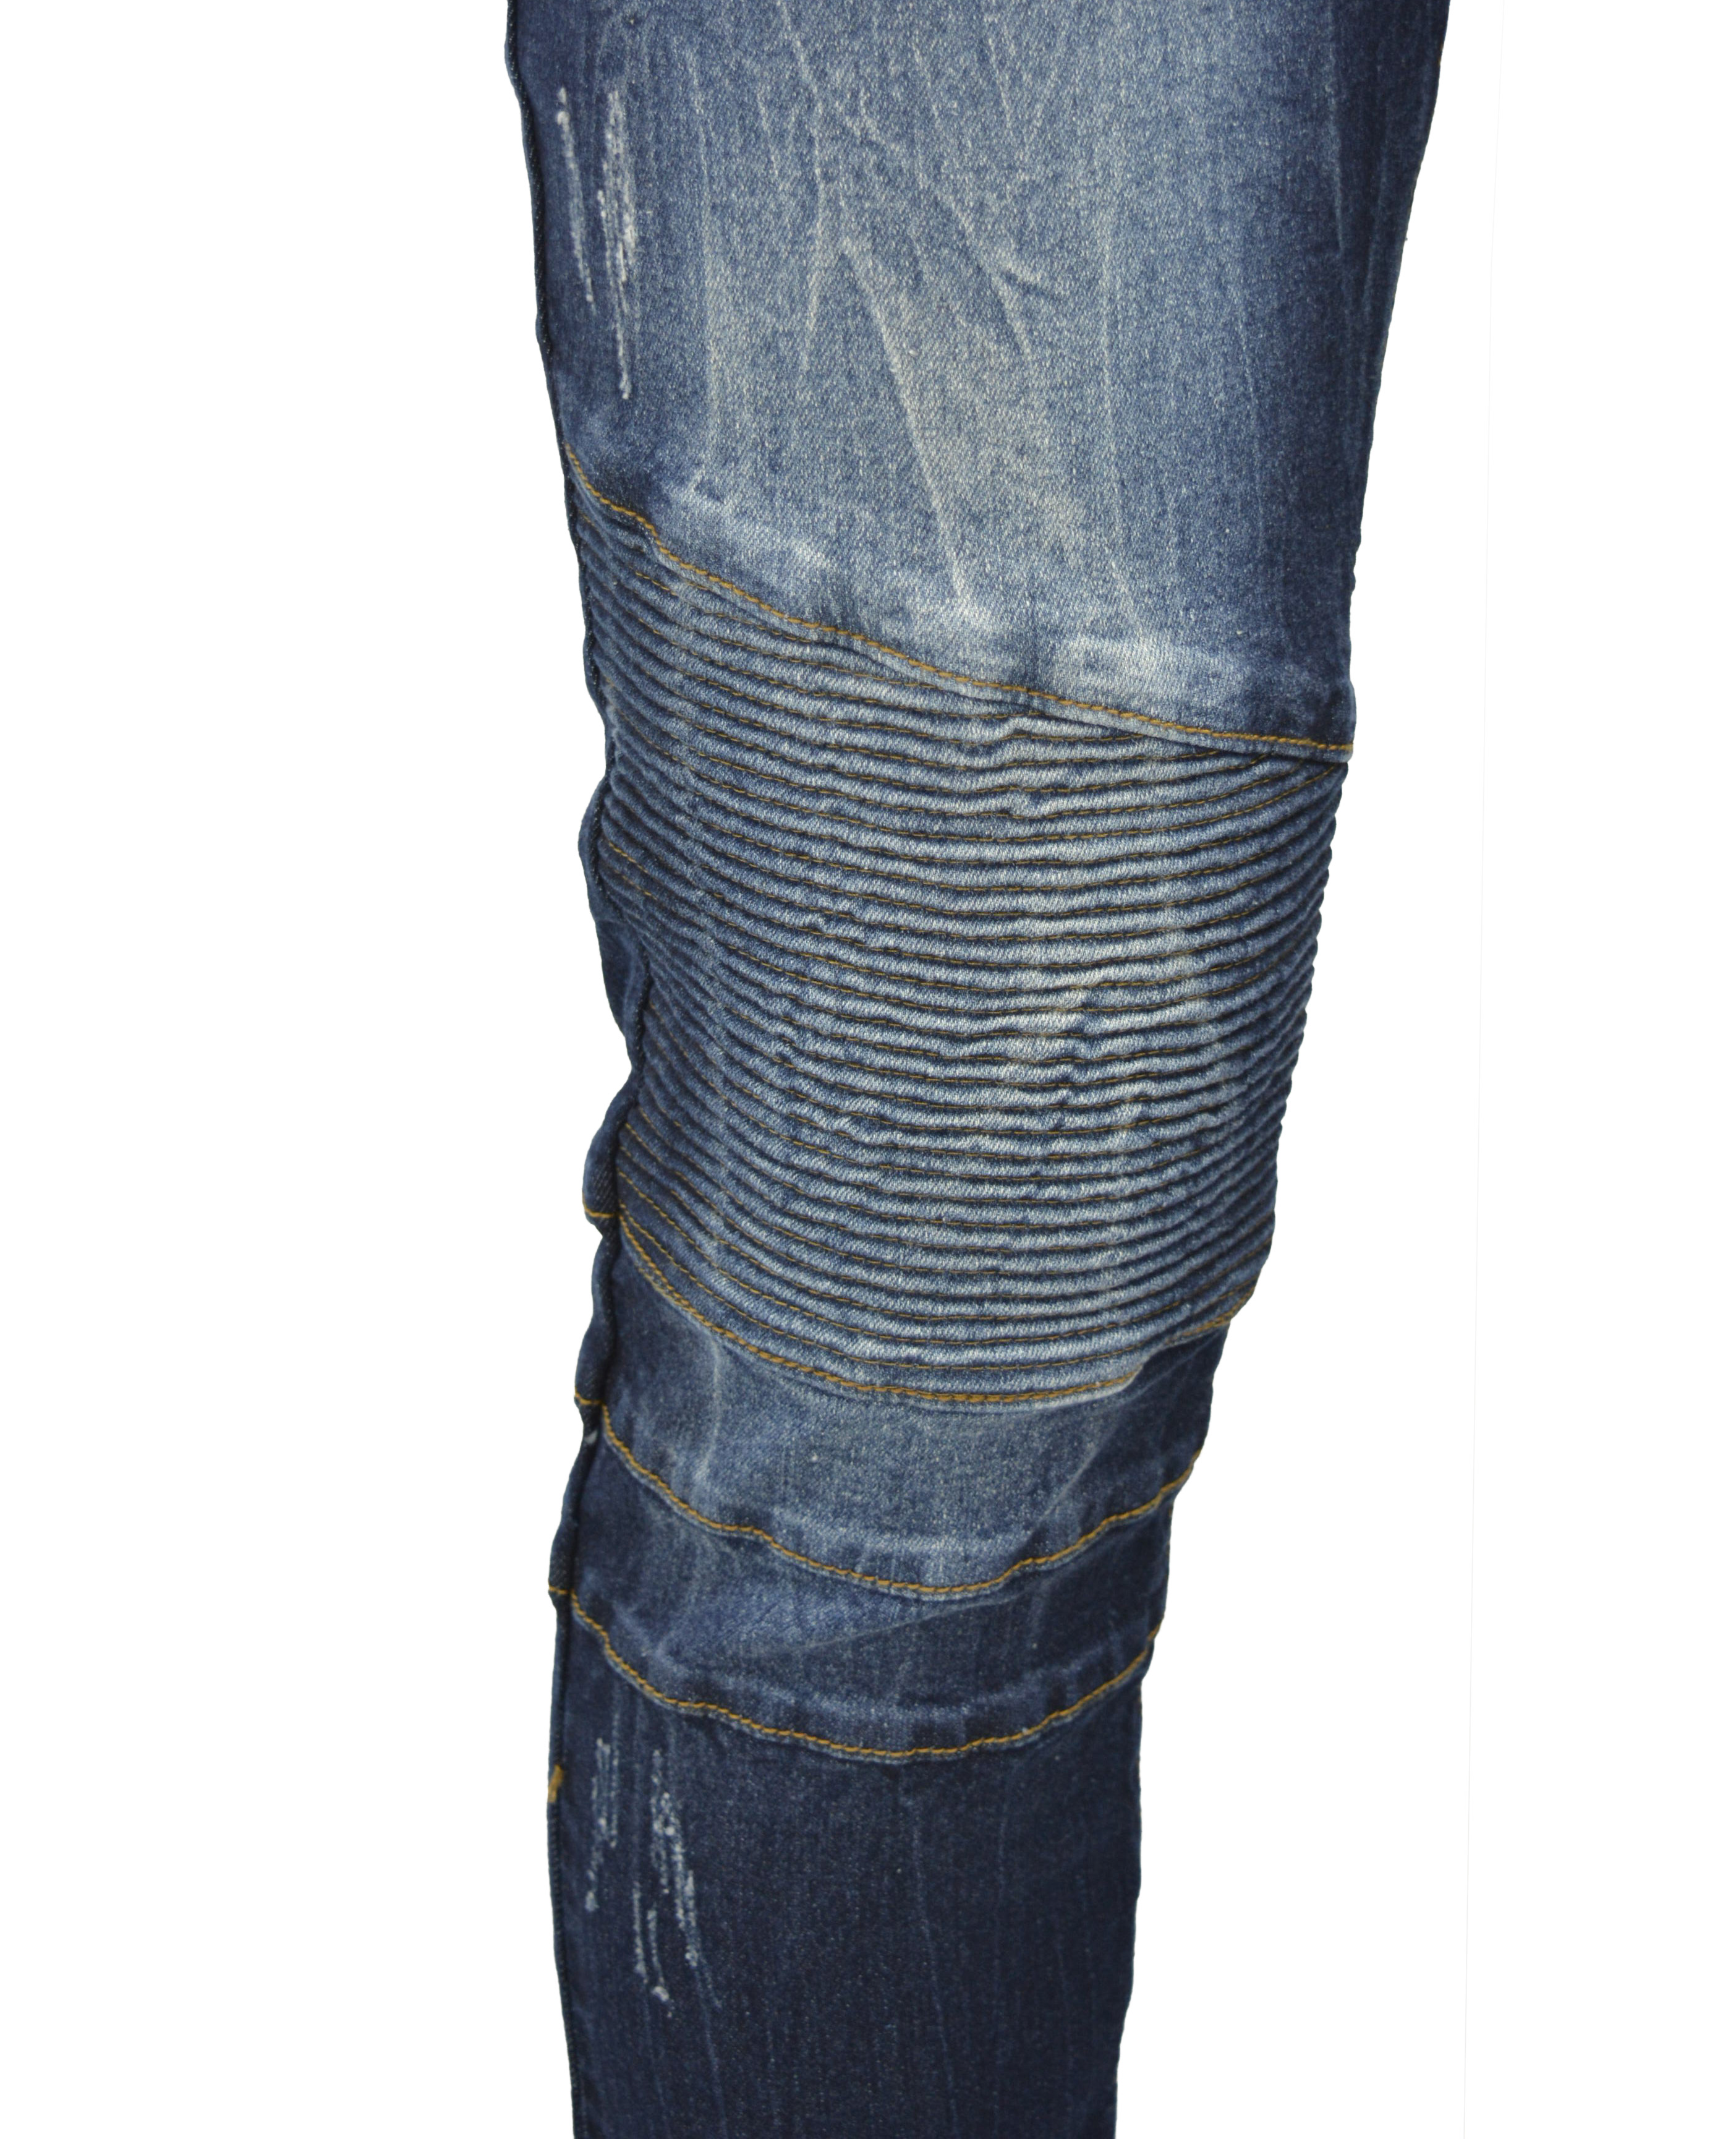 RAW X Men's Slim Fit Skinny Biker Jean, Comfy Flex Stretch Moto Wash Rip Distressed Denim Jeans Pants - image 4 of 5